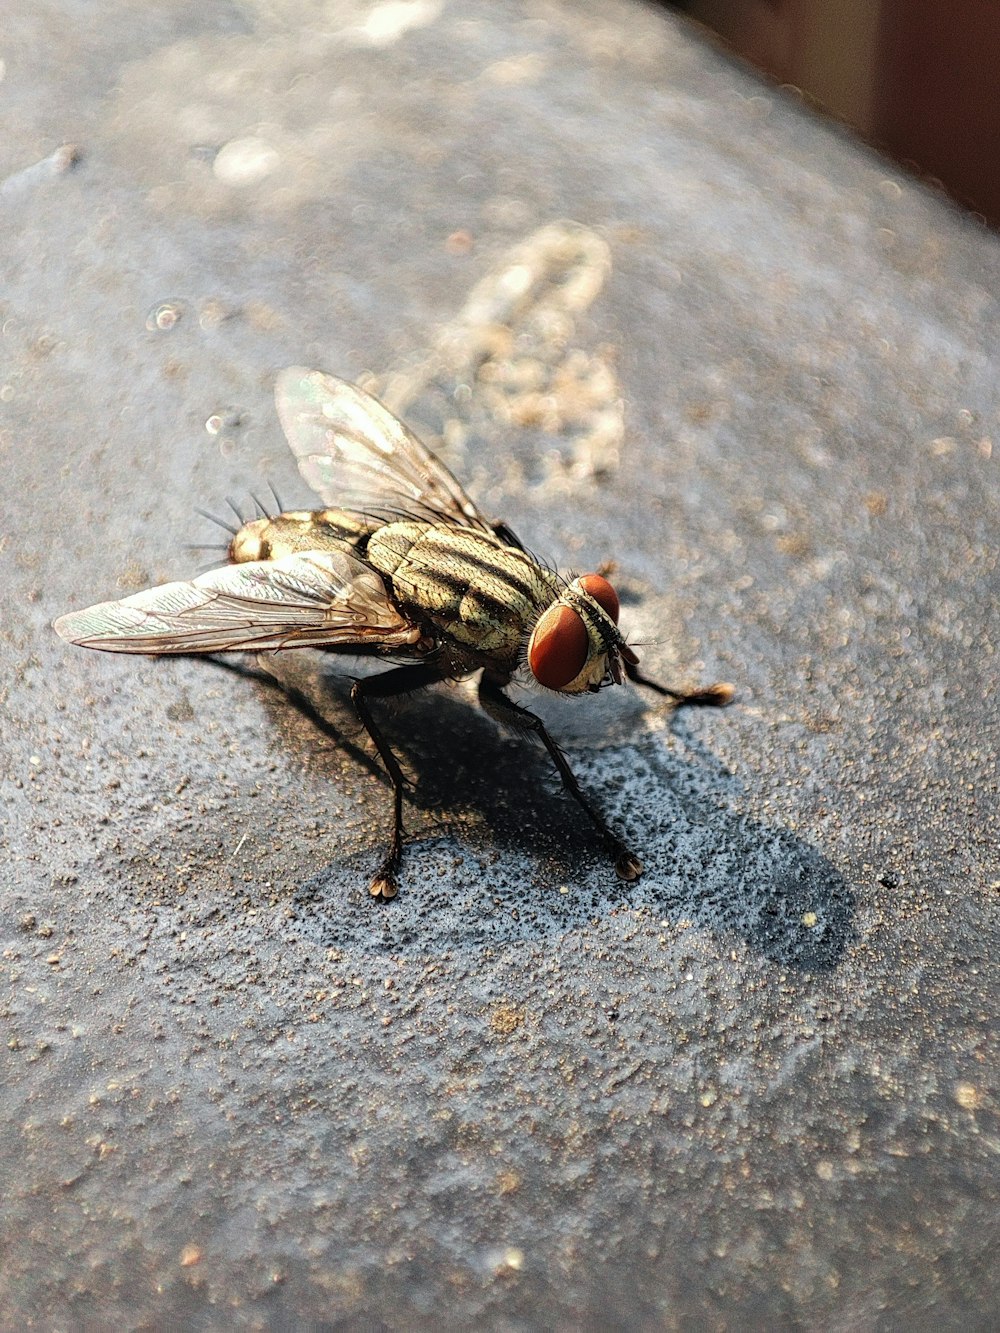 Nahaufnahme einer Fliege auf einer Zementoberfläche